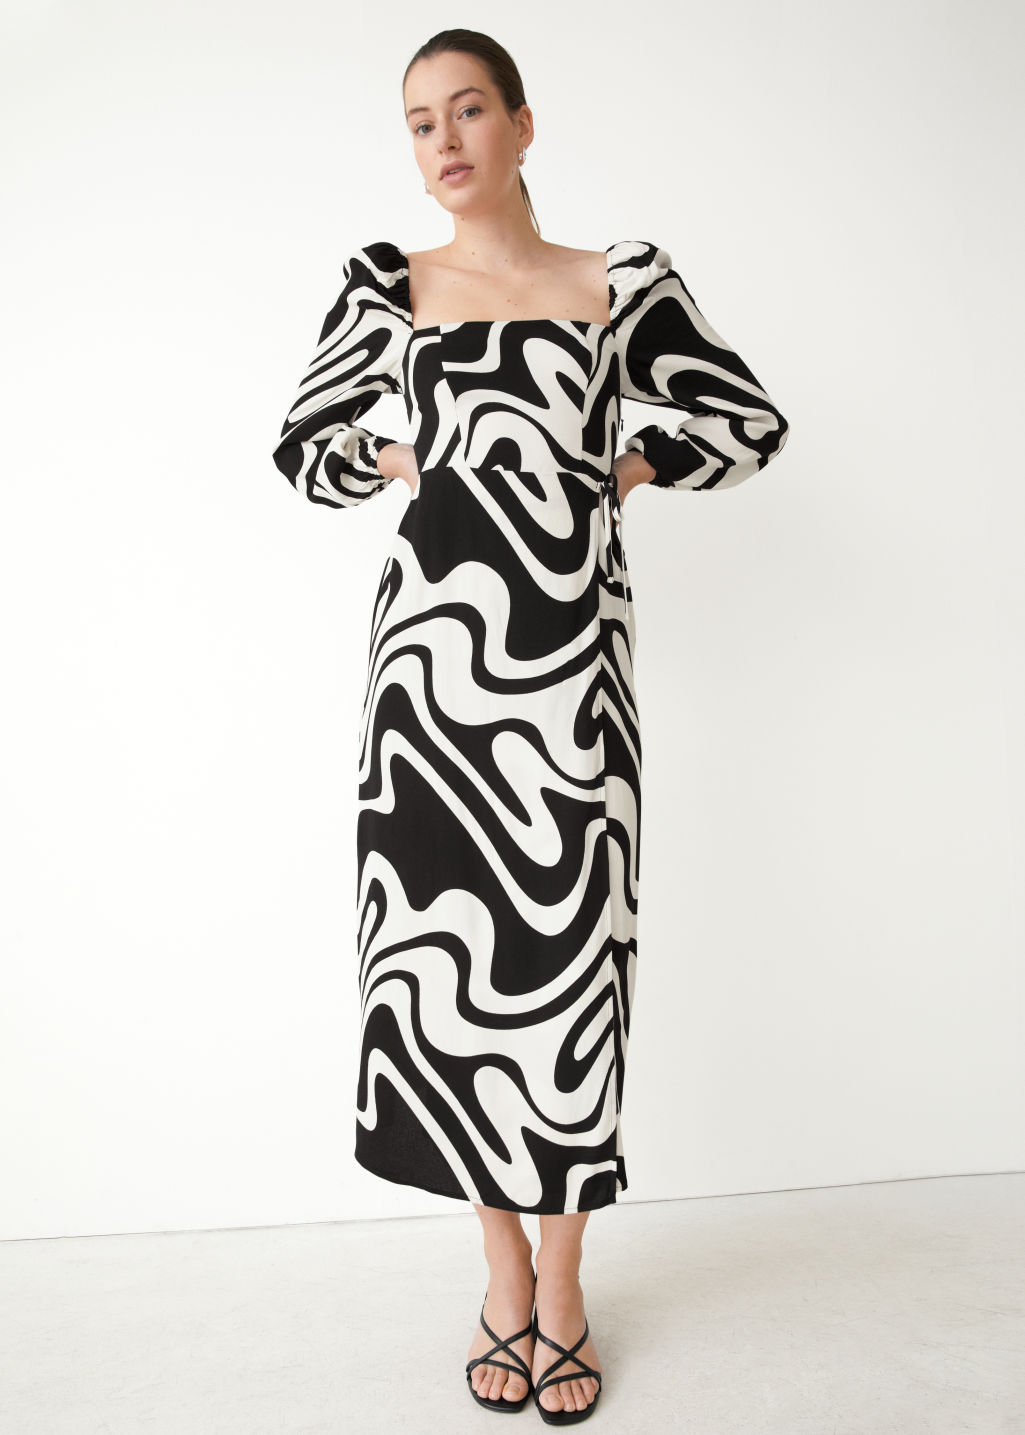 swirl pattern black and white dress